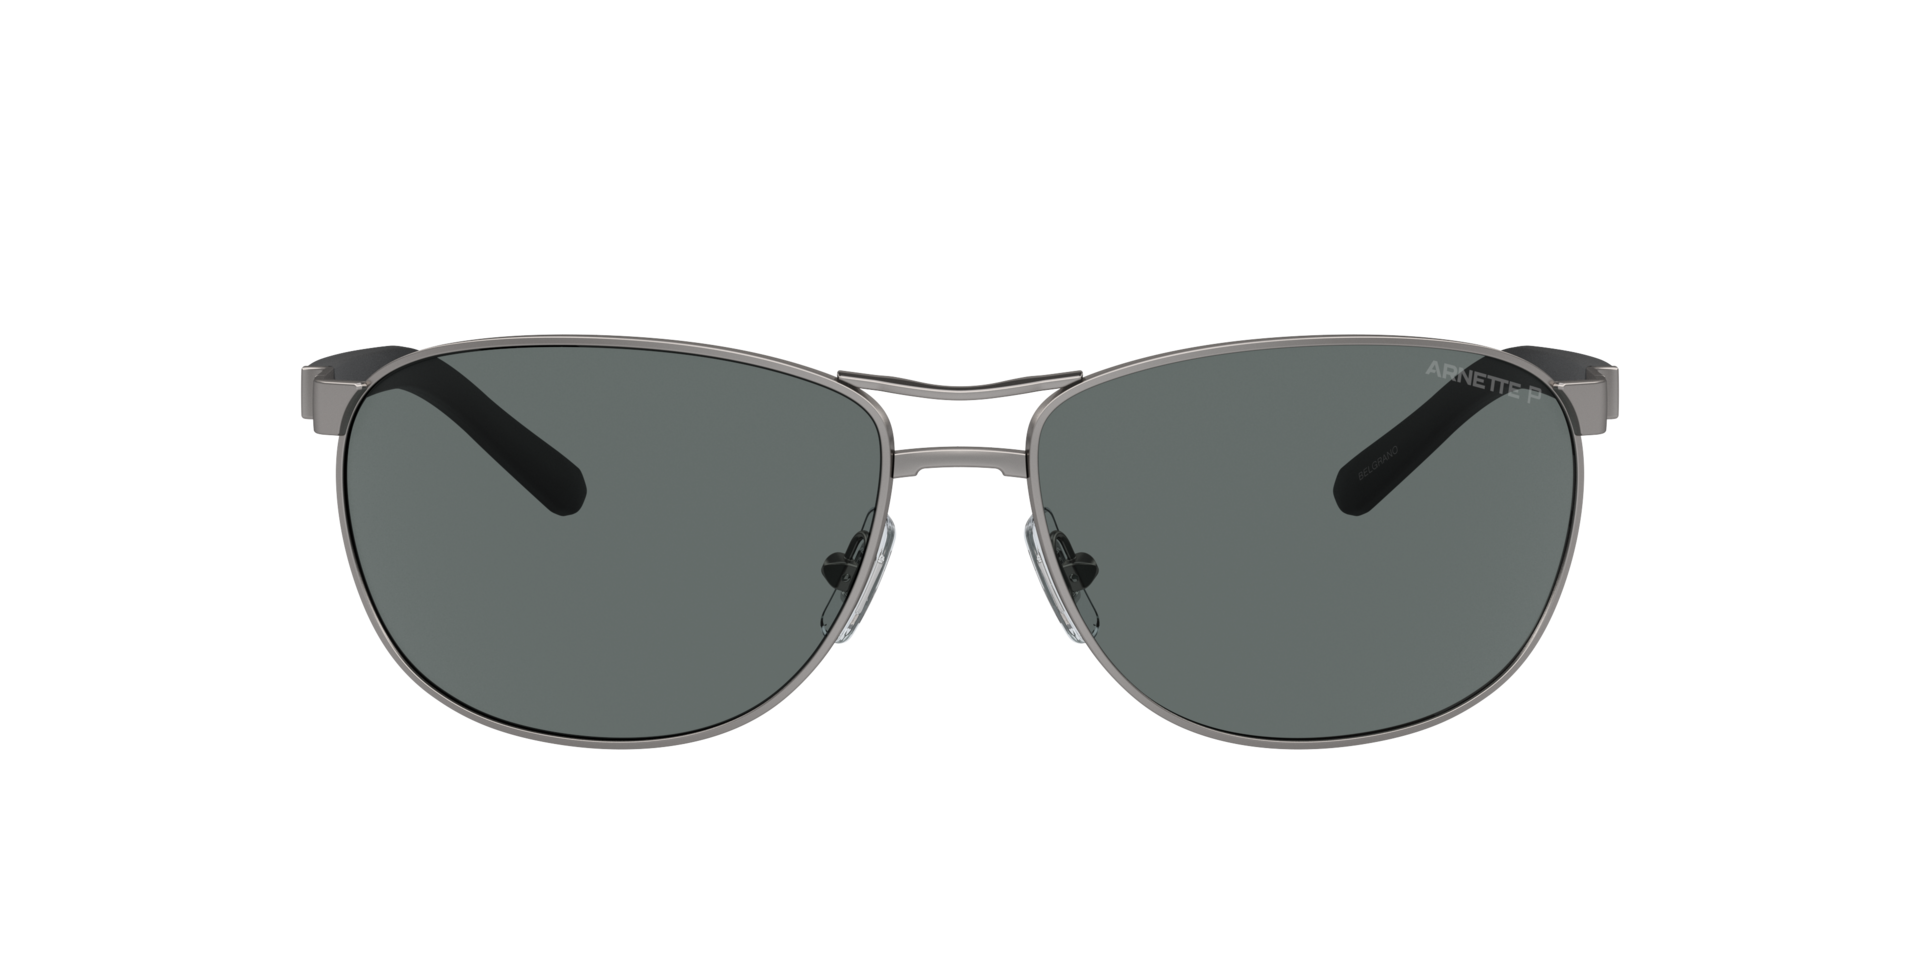 Das Bild zeigt die Sonnenbrille AN3090 745/81 von der Marke Arnette in silber.